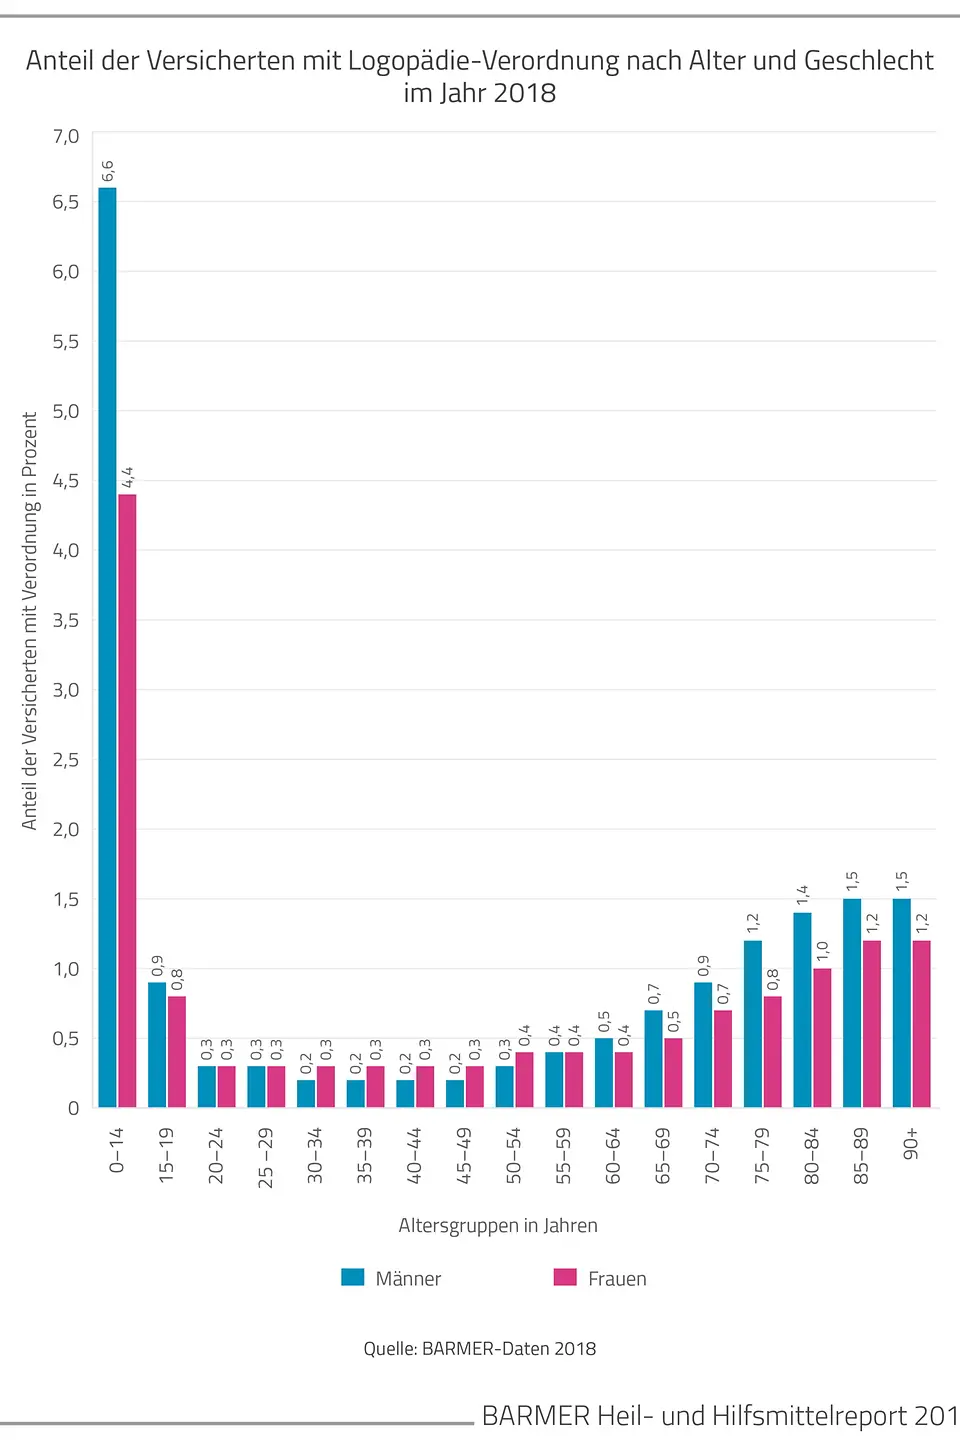 Die Grafik zeigt den Anteil der Versicherten mit Logopädie-Verordnung nach Alter und Geschlecht im Jahr 2018